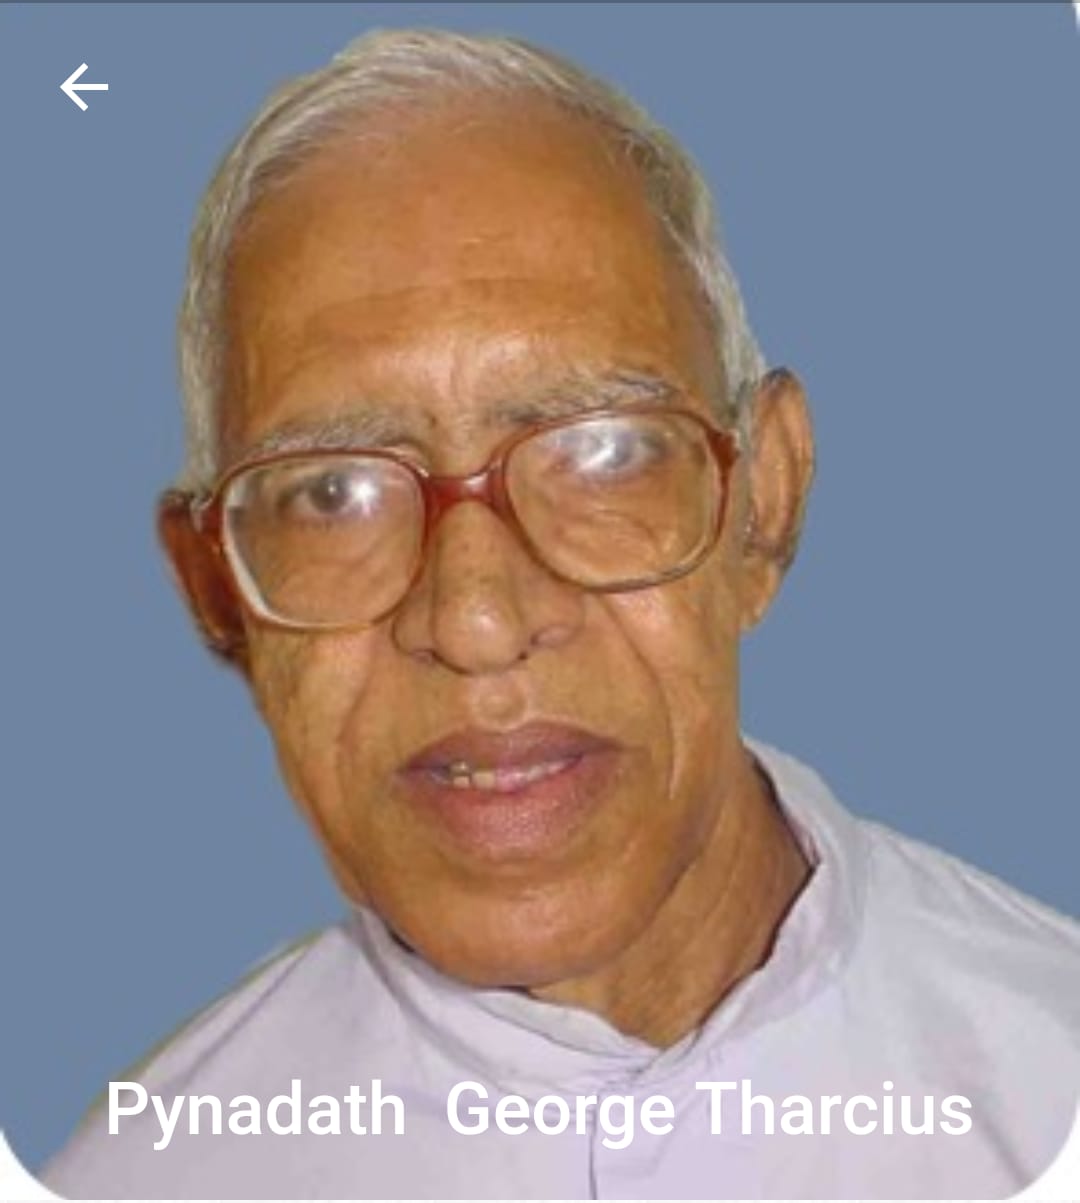 Rev. Fr. George Tarcius Pynadath CMI (81)